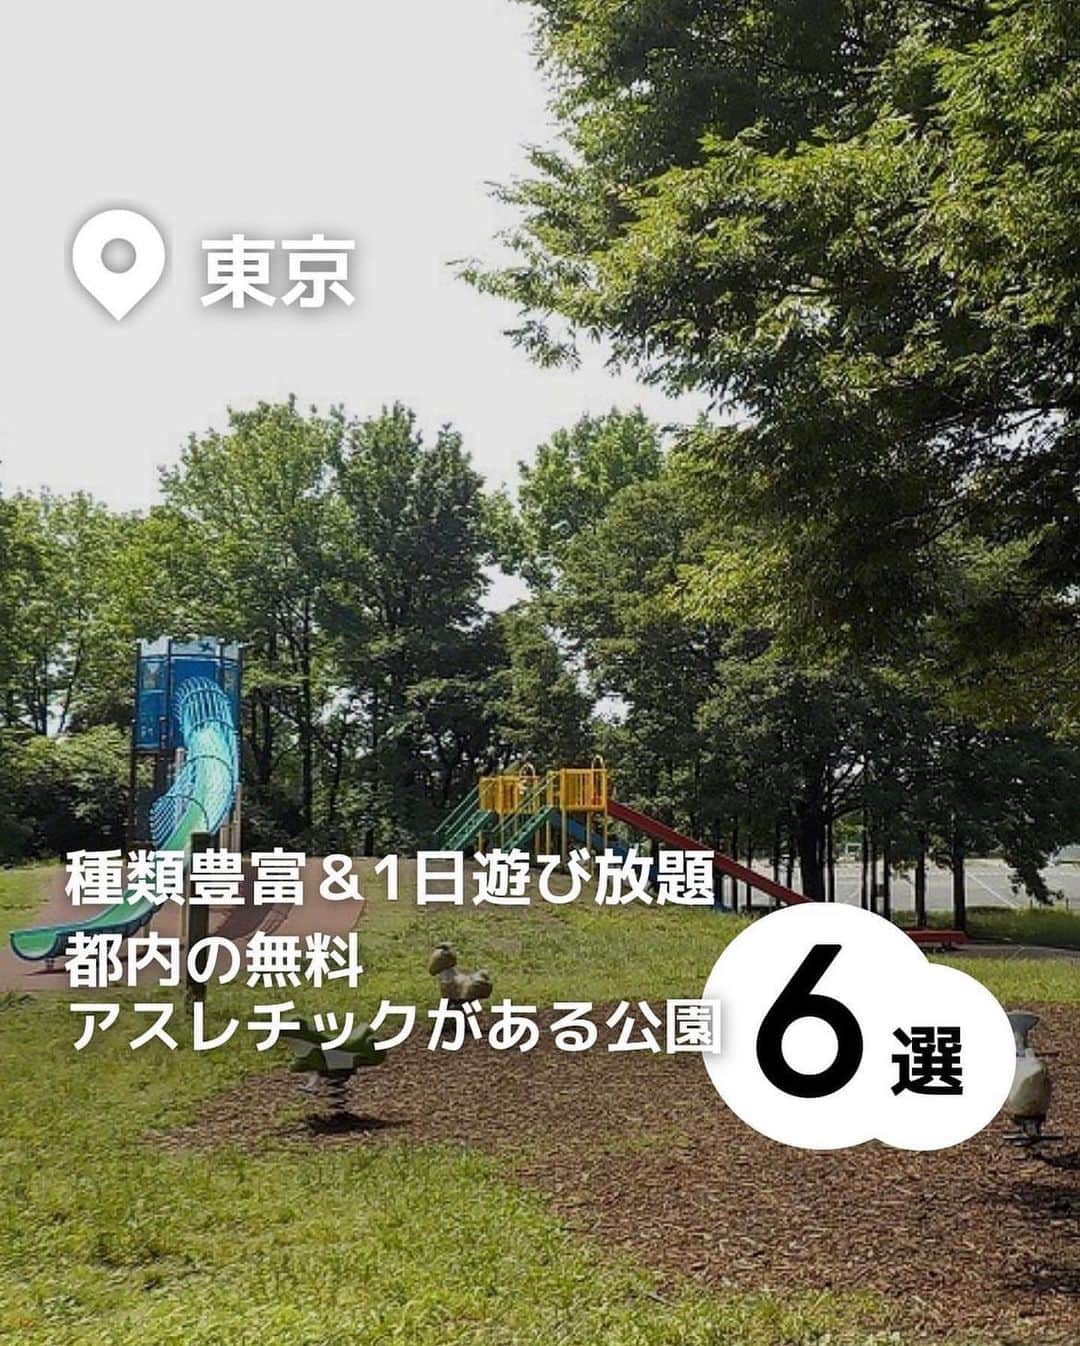 iko-yo（いこーよオフィシャル）さんのインスタグラム写真 - (iko-yo（いこーよオフィシャル）Instagram)「今回ピックアップしたのは「東京都内の無料アスレチックがある公園6選」 ーーーーーーーーーーーーーーーーーー  📍 東京都葛飾区 【水元公園】 東京23区内で最大規模の広さを誇り、ダイナミックな水郷風景を満喫できる公園。冒険広場には、バラエティ豊かな遊具がそろっています。なかでもターザンロープが人気で、週末には多くのファミリーが訪れ、列ができることもあるほど！ 園内には複数のトイレが設置されていて、おむつ交換台を備えているところもあるので、小さな子ども連れでも遊びに行きやすいです。  📍東京都新宿区 【落合公園】 西武新宿線の中井駅から徒歩約10分の緑と水場がある公園です。区立公園としては珍しいドッグランのほか、珍しくバスケットゴールがあるなど、多彩な楽しみ方ができます。 なかでも子供に大人気なのが、大型アスレチックや遊具。ターザン気分でボールを渡っていくポイントや、オリンピック競技に採用されたスポーツクライミングが楽しめるクライミングウォール、定番のすべり台などが用意されています。 また、広々と使える車いす対応トイレを完備しているので、小さな子どもとお出かけする際にも便利です。  📍東京都目黒区 【中根公園】 東急東横線の都立大学駅など3つの駅からアクセスでき、週末には多くの親子連れでにぎわう緑豊かな公園です。園内には、木製アスレチックや小さな子どもでも遊べる複合遊具があり、夏場には水遊びができるじゃぶじゃぶ池もオープン。目玉は、園内の傾斜を利用して作られたロングすべり台を含むアスレチックです。ロングすべり台をすべるには、木の吊り橋などのポイントをクリアする必要があり、登るときも楽しめるように設計されています。 園内の公衆トイレには、子ども用の補助便座や、おむつ替え台なども完備されていて、親子でお出かけしやすい公園になっています。  📍東京都世田谷区 【大蔵運動公園】 園内には多くのアスレチックや遊具があり、幼児から楽しめる公園です。園内の児童園には、ブランコやクライミングウォールなど多彩な遊具がズラリ。なかでも子どもたちに人気なのは、鉄の棒で作られた迷路です。迷路は中が見えるように作られているので、親は子どもがどこにいるかわかるので安心です。 多目的トイレも数カ所そろっていて、家族のお出かけにピッタリです。  📍東京都荒川区 【都立汐入公園】 隅田川に面し、季節の花々をはじめとした豊かな自然に恵まれています。アスレチックを含む多彩な遊具や、野外ステージ、テニスコートなどをそろえているほか、BBQができる広場（要予約）があるのも特徴です。園内の芝生広場にある「ツインタワー」と呼ばれるアスレチックには、綱渡りやスポーツクライミング、すべり台など数多くのポイントがあるので、子どもは大はしゃぎ。大人はBBQを楽しみ、子どもは遊具を楽しむなど、親子ともに充実した1日を過ごせる公園です。  📍東京都江戸川区 【小松川境川親水公園】 大きく5つのゾーンに分かれている親水公園。それぞれのゾーンには、滝や飛び石、吊り橋などが配され、全域で水遊びが楽しめます。園内には、全国でも珍しい足元に水遊び場がある木製アスレチックも。水遊び場は浅いので、浮き輪がなくても安全に遊べるうえ、夏季シーズンである7月〜8月の間は毎日点検が行われるので安心です。 すべり台や砂場などもあるので、ぜひ親子でお出かけしてみてくださいね。  ※2023年5月10日時点の情報です。 最新の情報は公式HPや「いこーよ」サイトでご確認ください。 ーーーーーーーーーーーーーーーーーーー おでかけ情報量は日本最大級！ 子どもとお出かけ情報サイト「いこーよ」 「親子でおでかけしたい場所」をご紹介させていただいています！  お子さんとのおでかけの思い出の写真を、このアカウントをフォローの上#いこーよ をつけてぜひ投稿してください。魅力的な写真は、いこーよ公式SNSで紹介させていただきます！  募集中タグ#いこーよ #いこーよおでかけ部　  「子どもと行きたい！」と思ったら保存が便利！ プロフィールのURLから「いこーよ」のサイトに行くと、他の投稿やオトクな情報などが載っています♪ ☞ @ikoyo_odekake  #いこーよ #お出かけ #おでかけ #お出かけスポット #子連れ #子連れ旅行#こどものいる暮らし #子連れスポット #いこーよお出かけ部 #子どもとおでかけ #新宿ママ  #葛飾ママ #葛飾観光 #葛飾旅行 #世田谷ママ #世田谷観光 #世田谷旅行 #荒川ママ #荒川旅行 #荒川観光 #外遊び #アスレチック  #水元公園 #落合公園 #中根公園 #大倉運動公園 #都立汐入公園 #小松川境川親水公園」5月14日 21時33分 - ikoyo_odekake